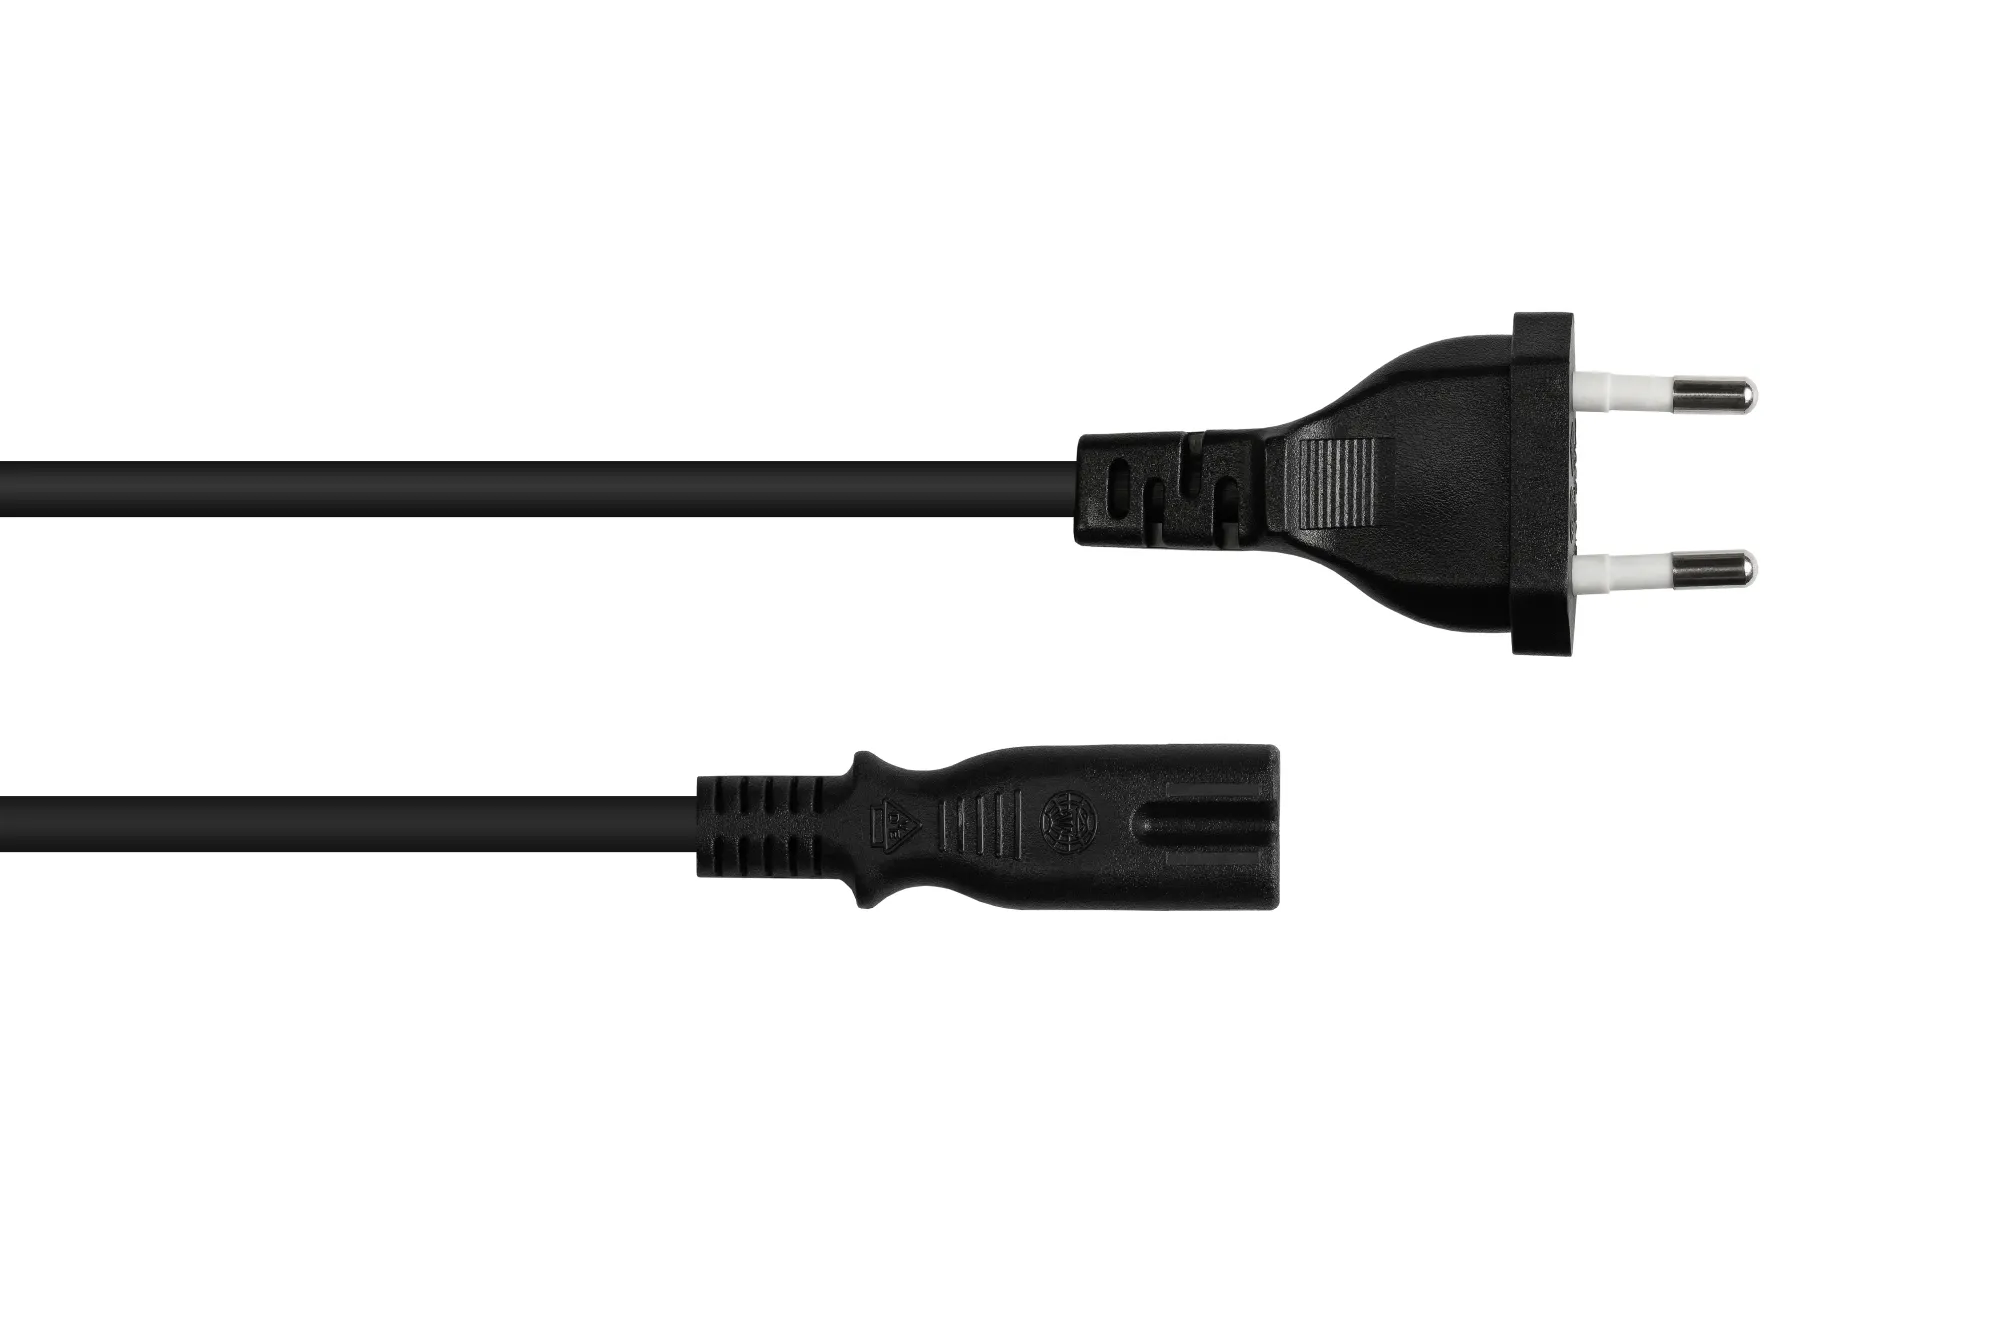 Euro-Netzkabel Euro-Stecker Typ C (gerade) an C7/Euro 8 Buchse (gerade), schwarz, 0,75 mm², 0,75 m,